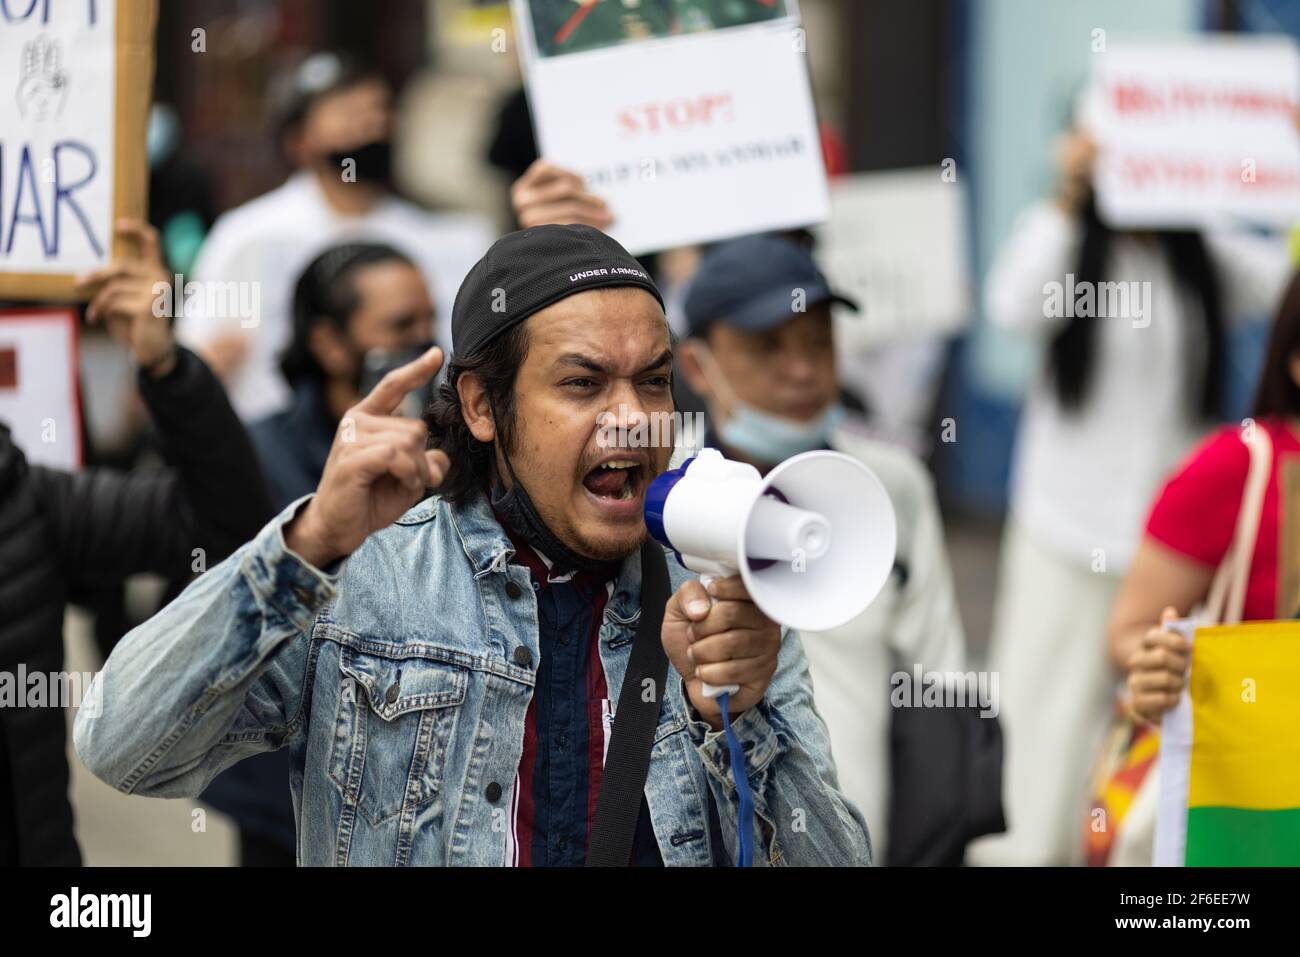 London, Großbritannien. März 2021, 31st. Ein marschierende Protestler, der in ein Megaphon schreit. Demonstranten versammelten sich auf dem Parliament Square - mit Gesichtsmasken und beobachteten eine soziale Distanzierung -, bevor sie zur chinesischen Botschaft marschierten, um Solidarität mit dem Volk von Myanmar gegen den Militärputsch und die staatlichen Tötungen von Zivilisten zu zeigen. Vor der Botschaft wurden Reden gehalten. Seit Beginn des Militärputsches am 1st. Februar wurden in Myanmar mehr als 520 Menschen von Sicherheitskräften getötet. Am vergangenen Samstag war der gewalttätigste Tag, an dem mehr als 100 Menschen getötet wurden. Kredit: Joshua Windsor/Alamy Live Nachrichten Stockfoto